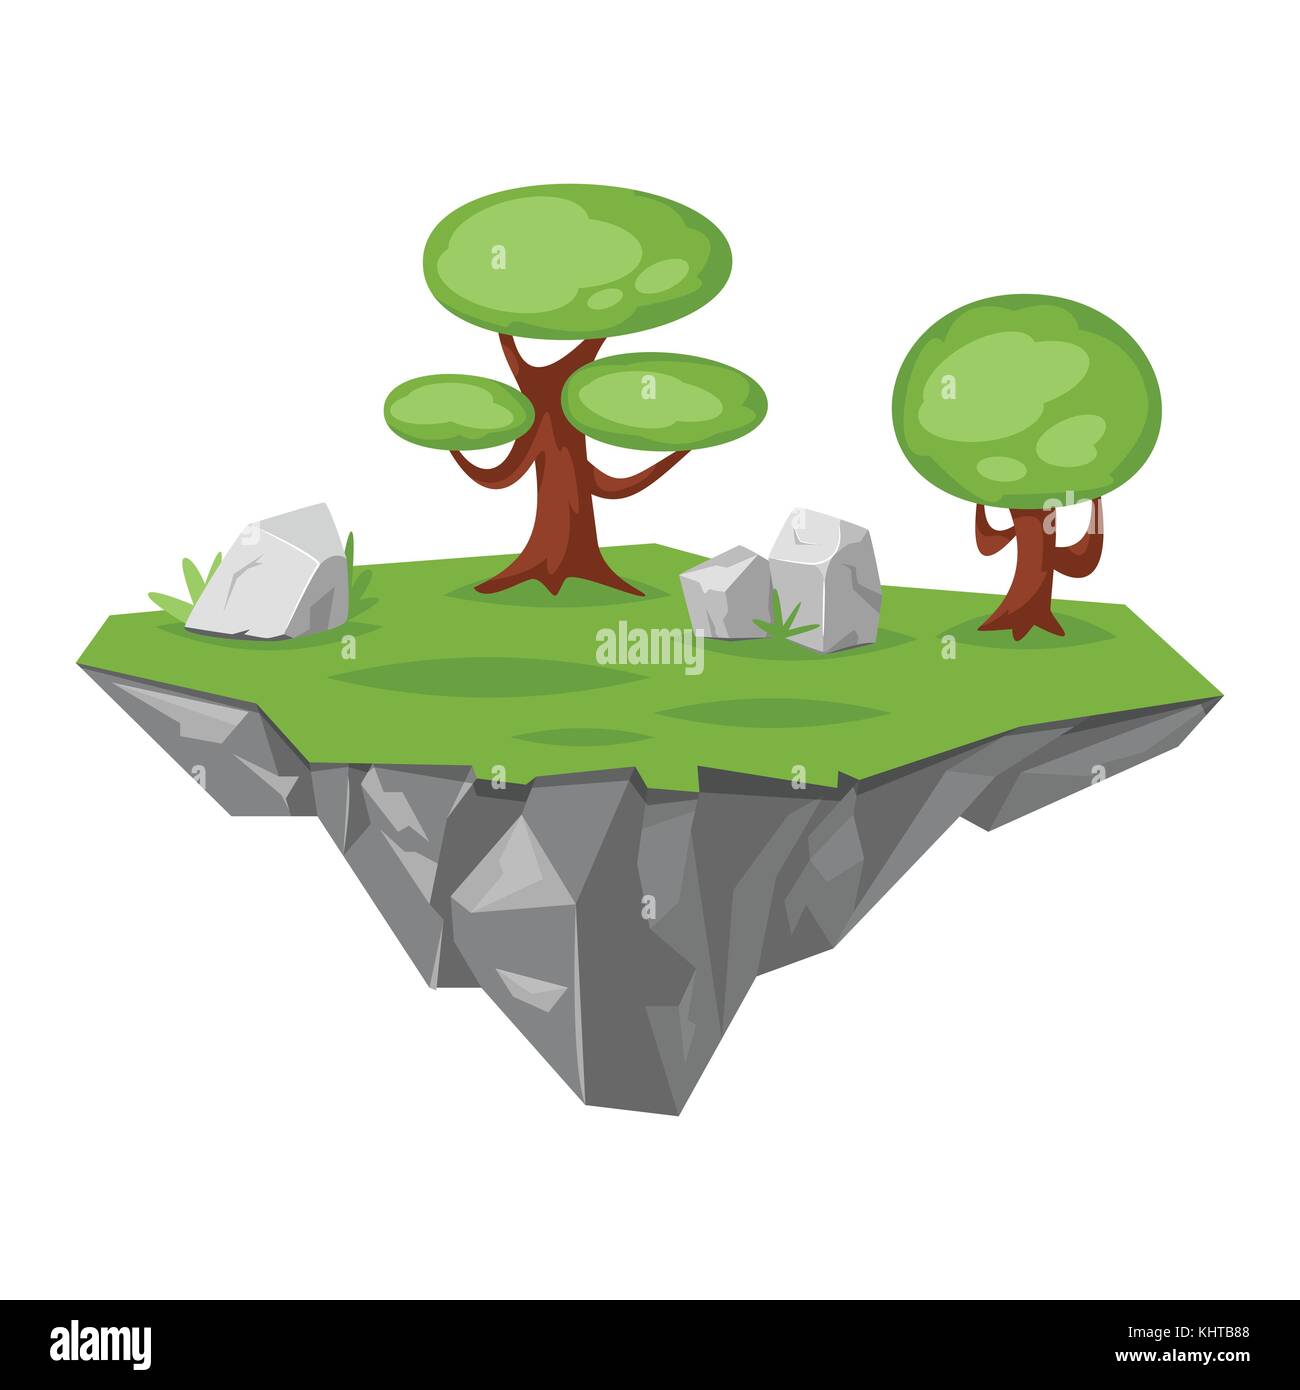 Vector cartoon illustration de pierre jeu de l'île Green, isolé sur fond blanc. jeu utilisateur (GUI) pour les jeux vidéos, l'ordinateur ou w Illustration de Vecteur